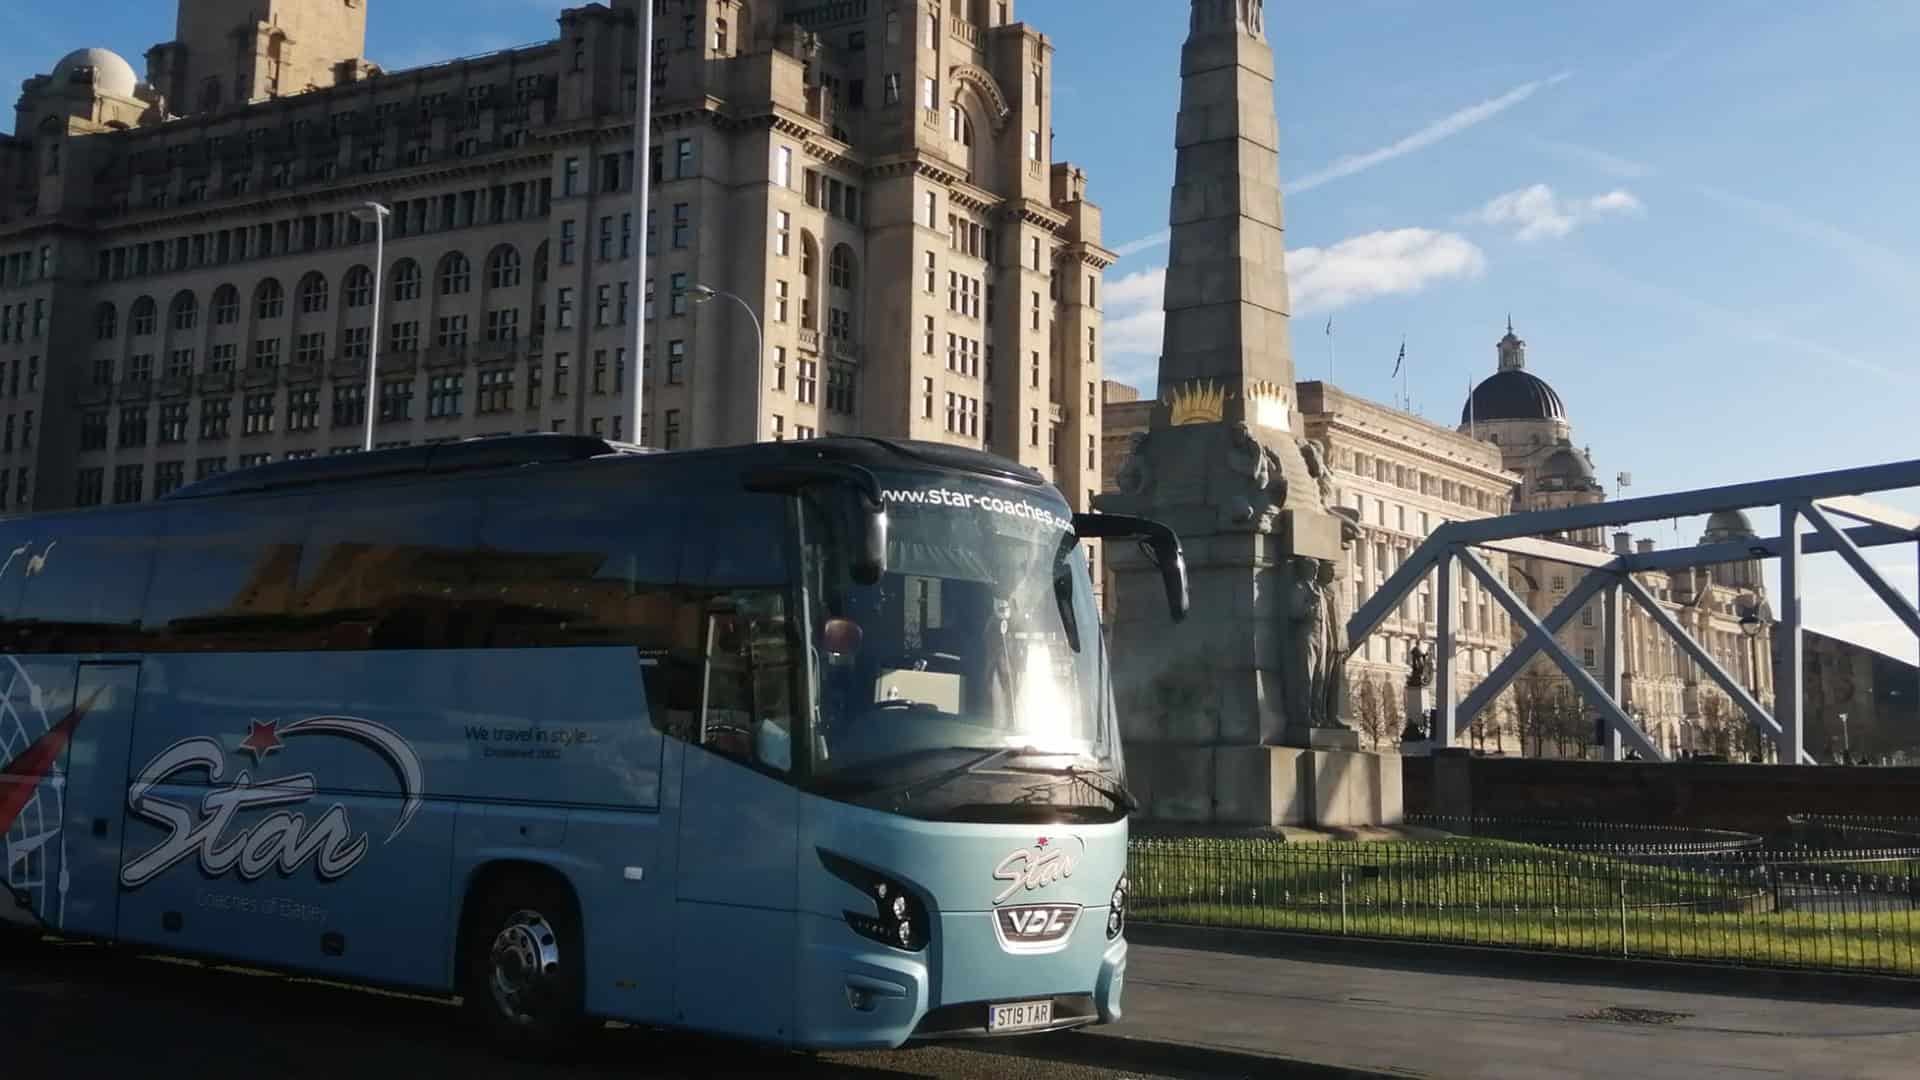 tour operators coach hire west yorkshire